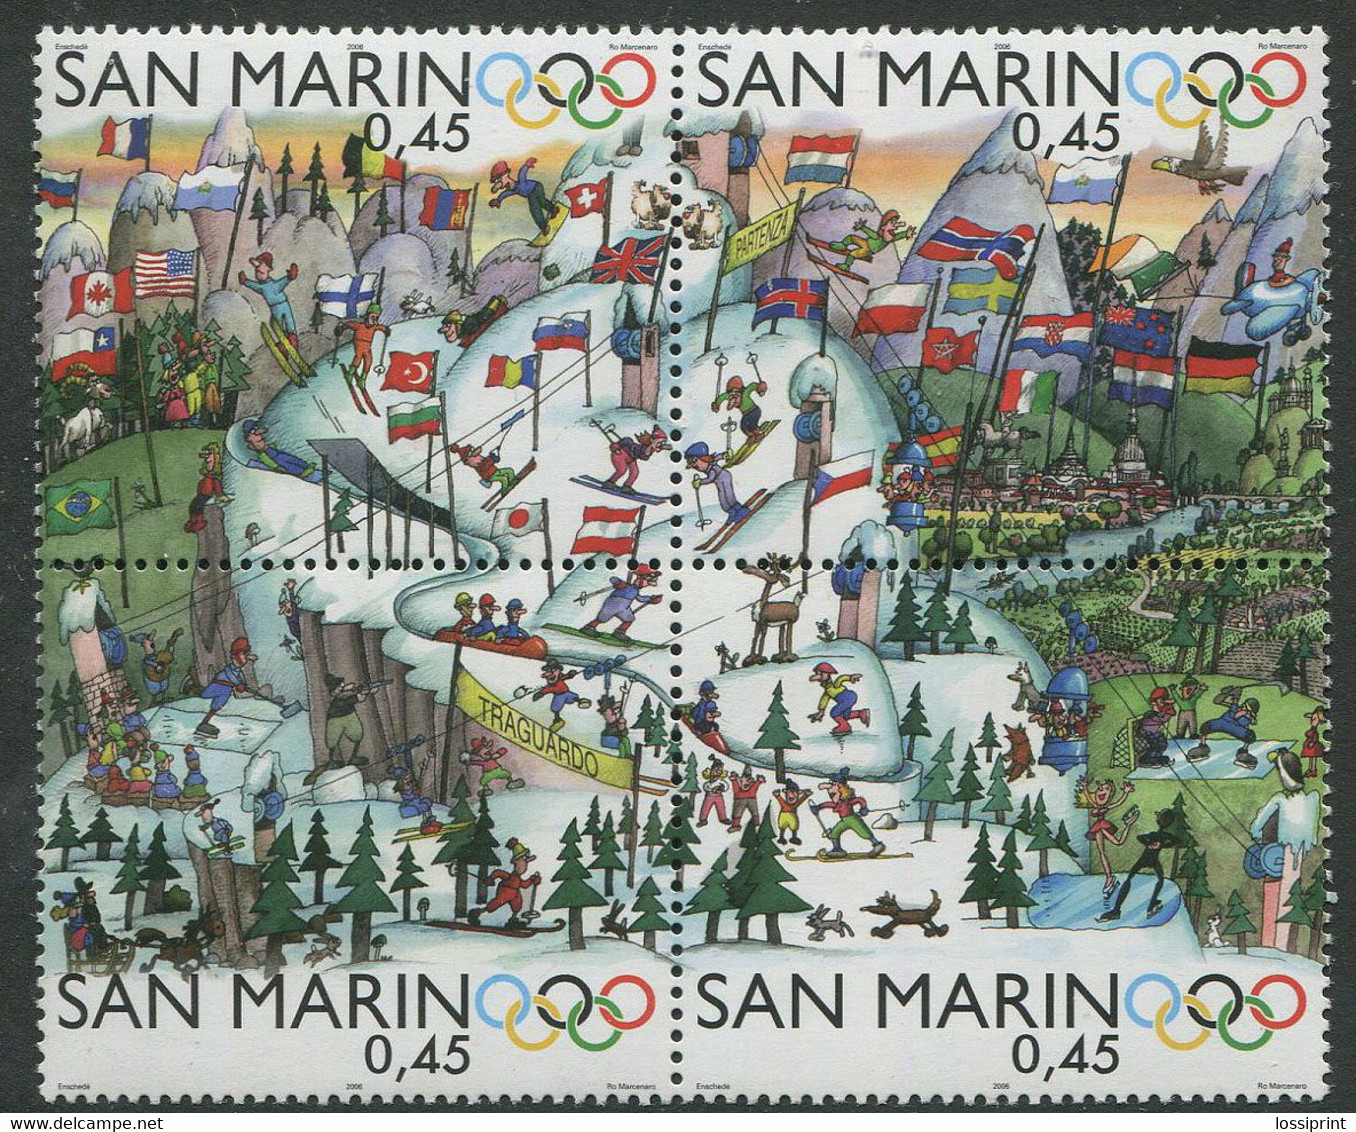 San Marino:Unused Stamps Serie Torino Olympic Games 2006, MNH - Invierno 2006: Turín